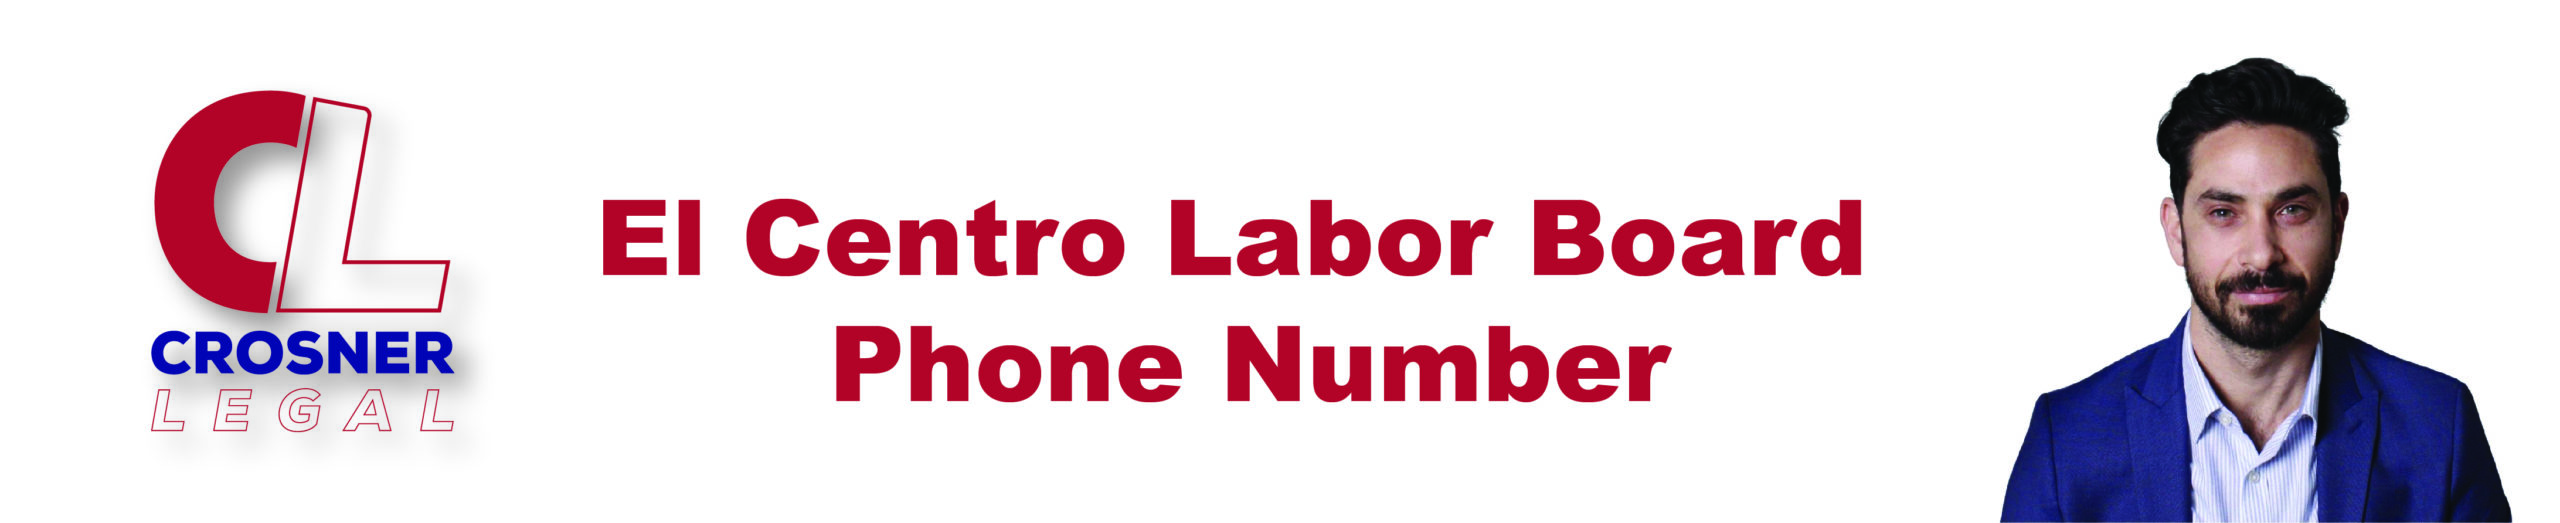 El Centro Labor Board Phone Number